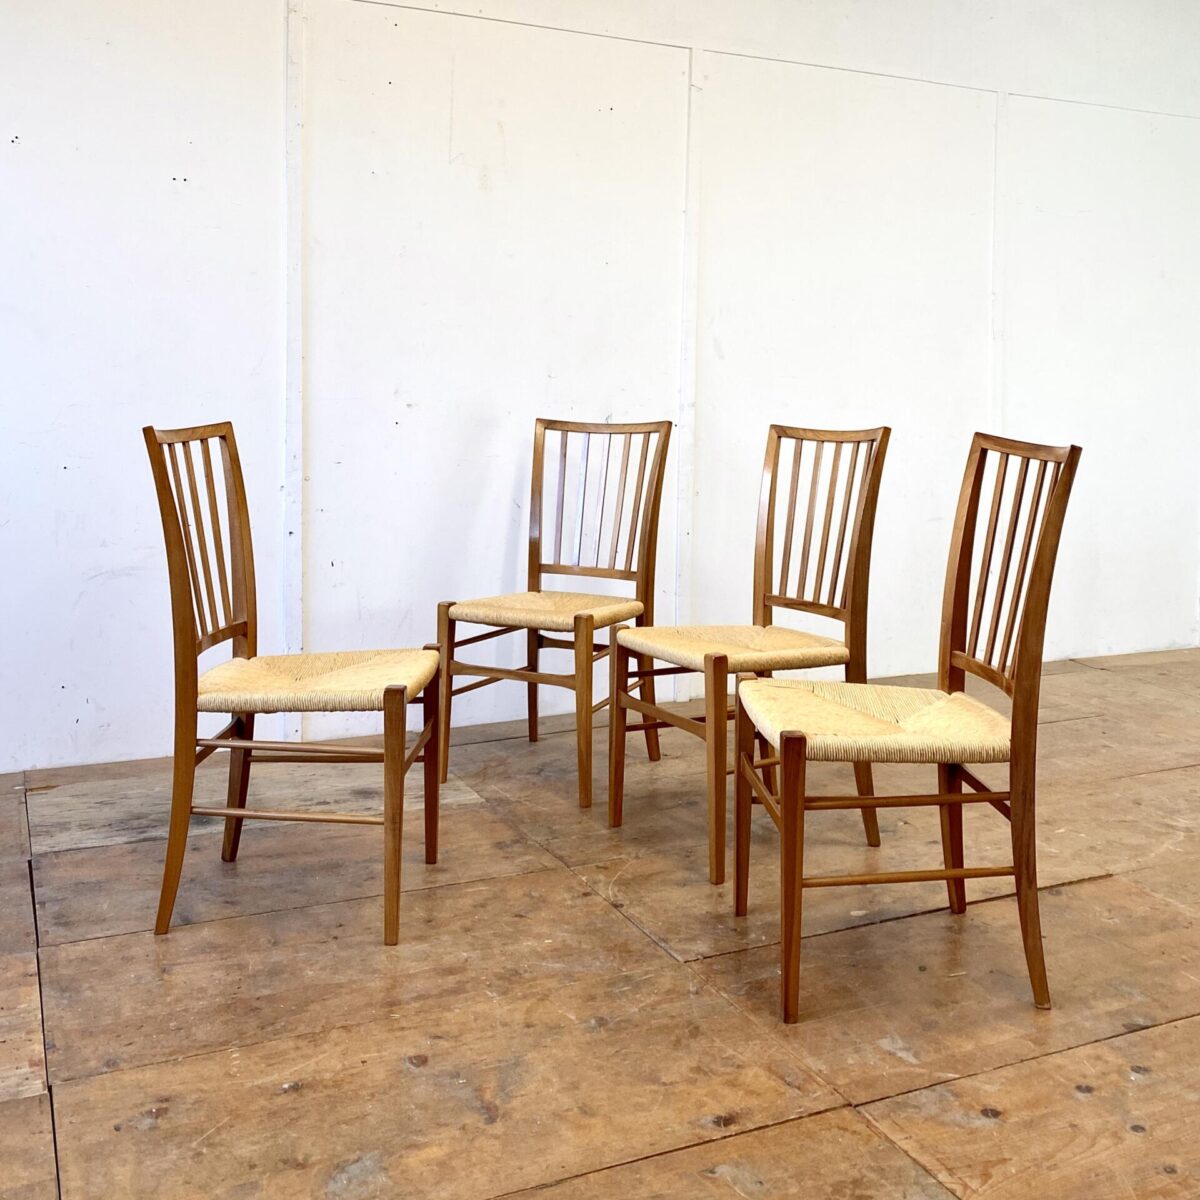 Deuxieme.shop midcentury Stühle Peter hvidt Olga Molgard. 4er Set Nussbaum Stühle mit Bastsitzfläche. Preis fürs Set. Gepflegte qualitative Esszimmer Stühle, ähnlich den Tessinerstühlen produziert, etwas weniger rustikal und mit Sprossen beim Rücken. 